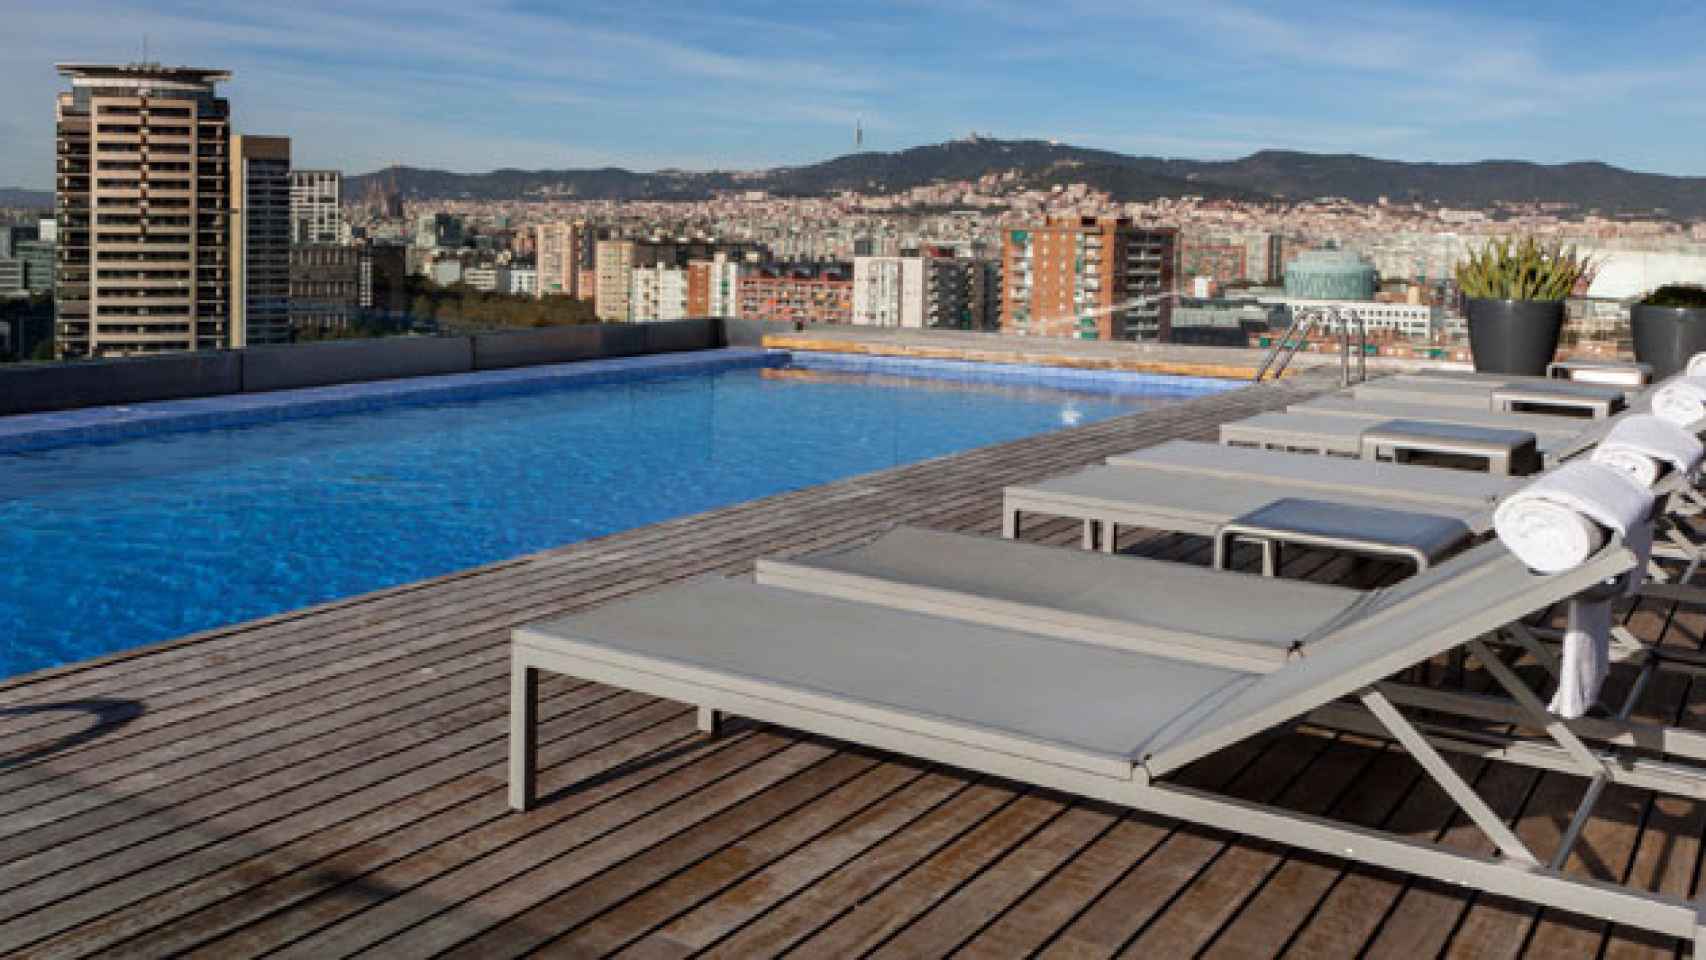 Terraza del AC Hotel Barcelona Forum-Marriott, con vistas sobre la ciudad / CG